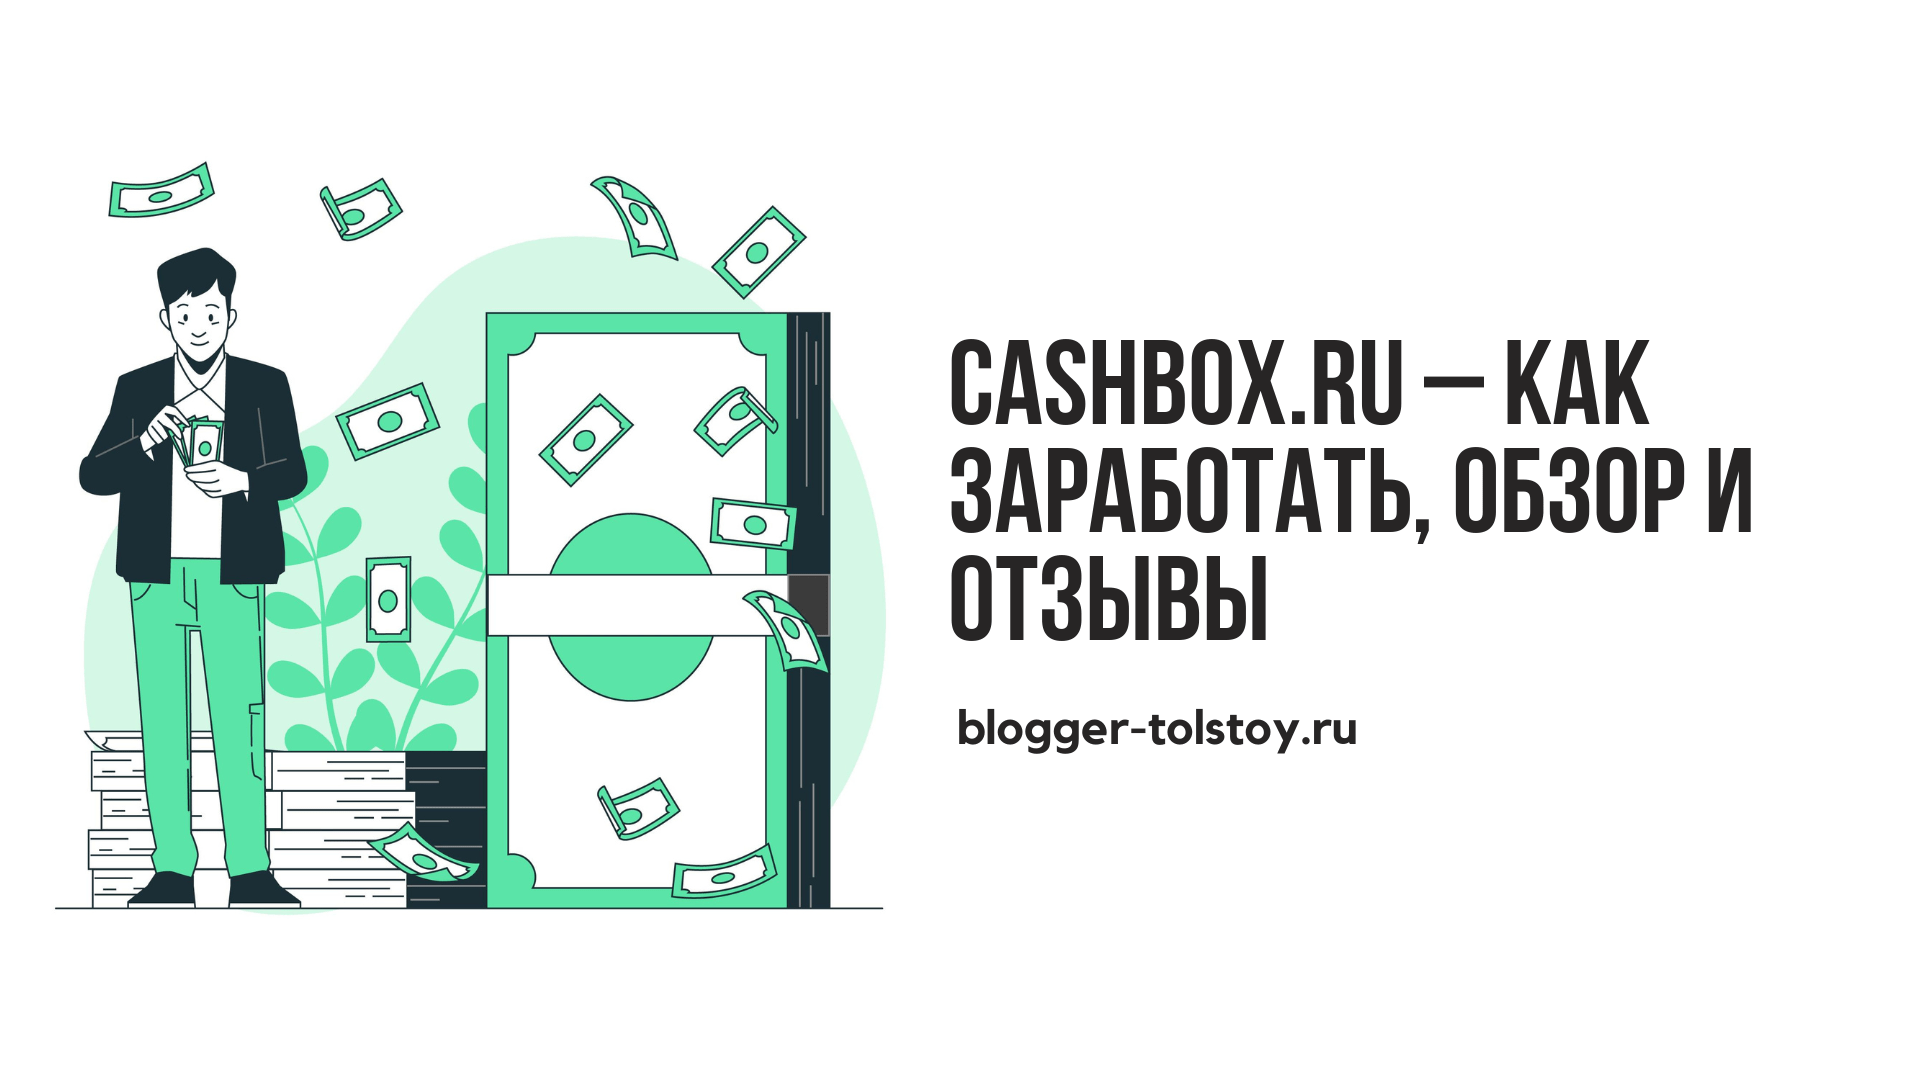 Превью к статье о сайте Cashbox.ru 